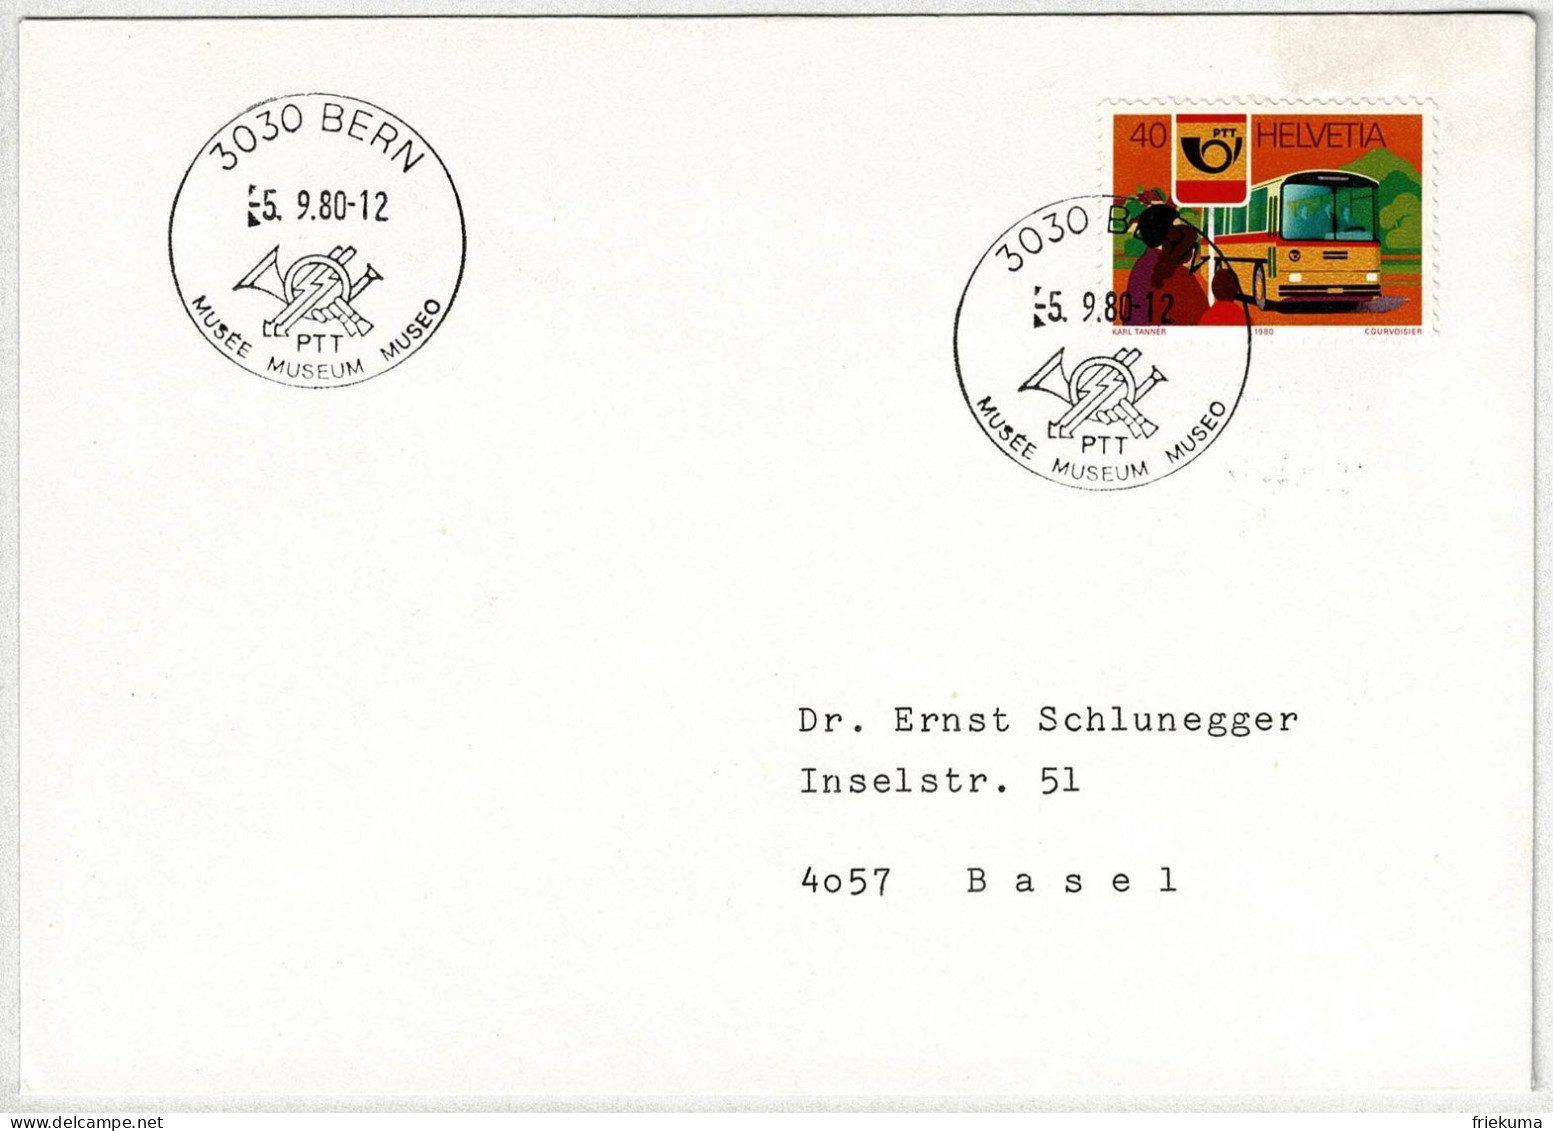 Schweiz / Helvetia 1980, Brief Museum PTT Bern - Basel, Postauto / Postbus Saurer - Bussen